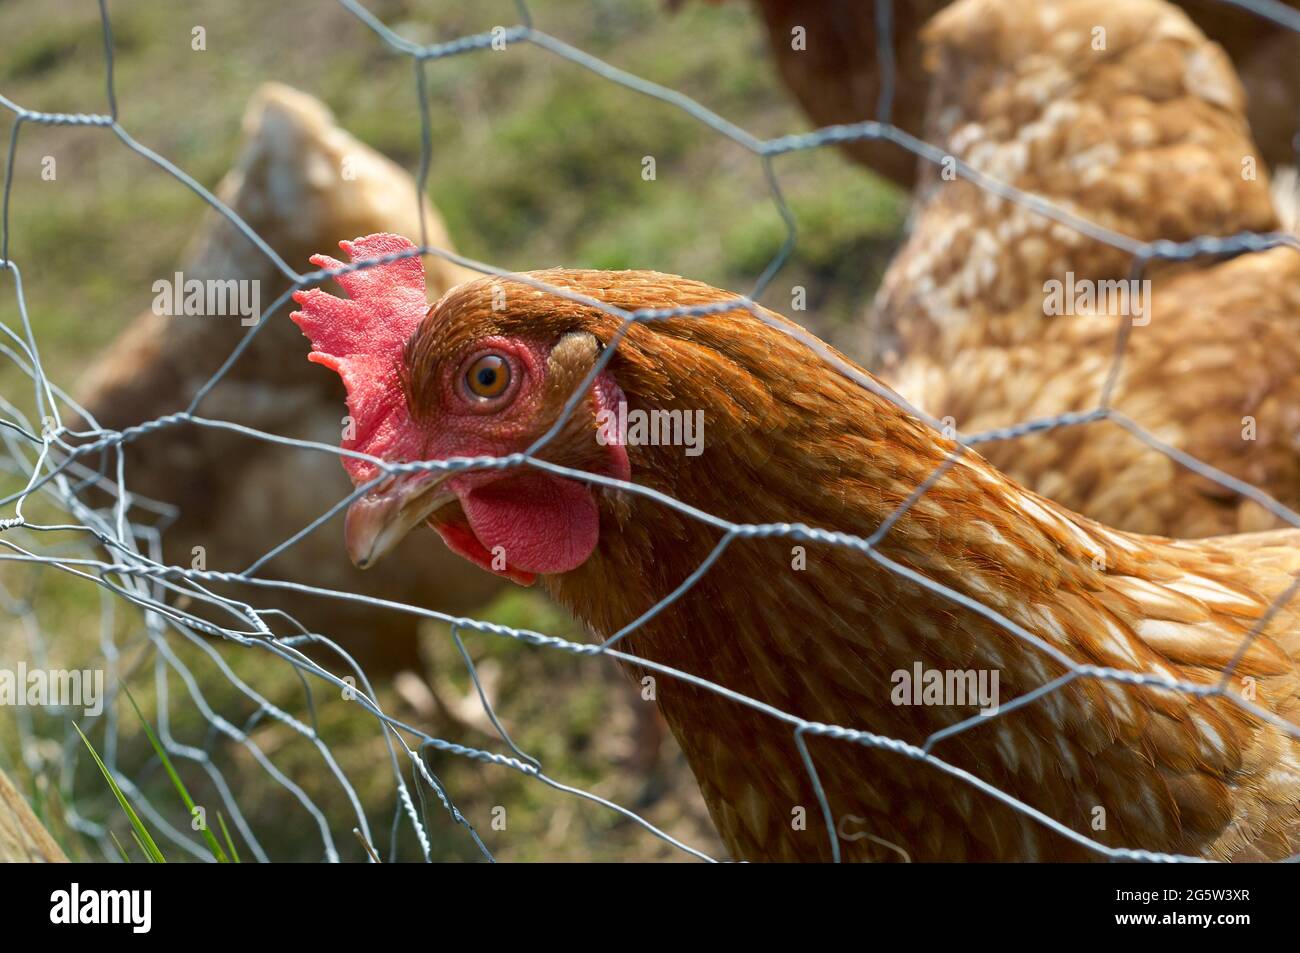 Chicken looking through chicken wire Stock Photo